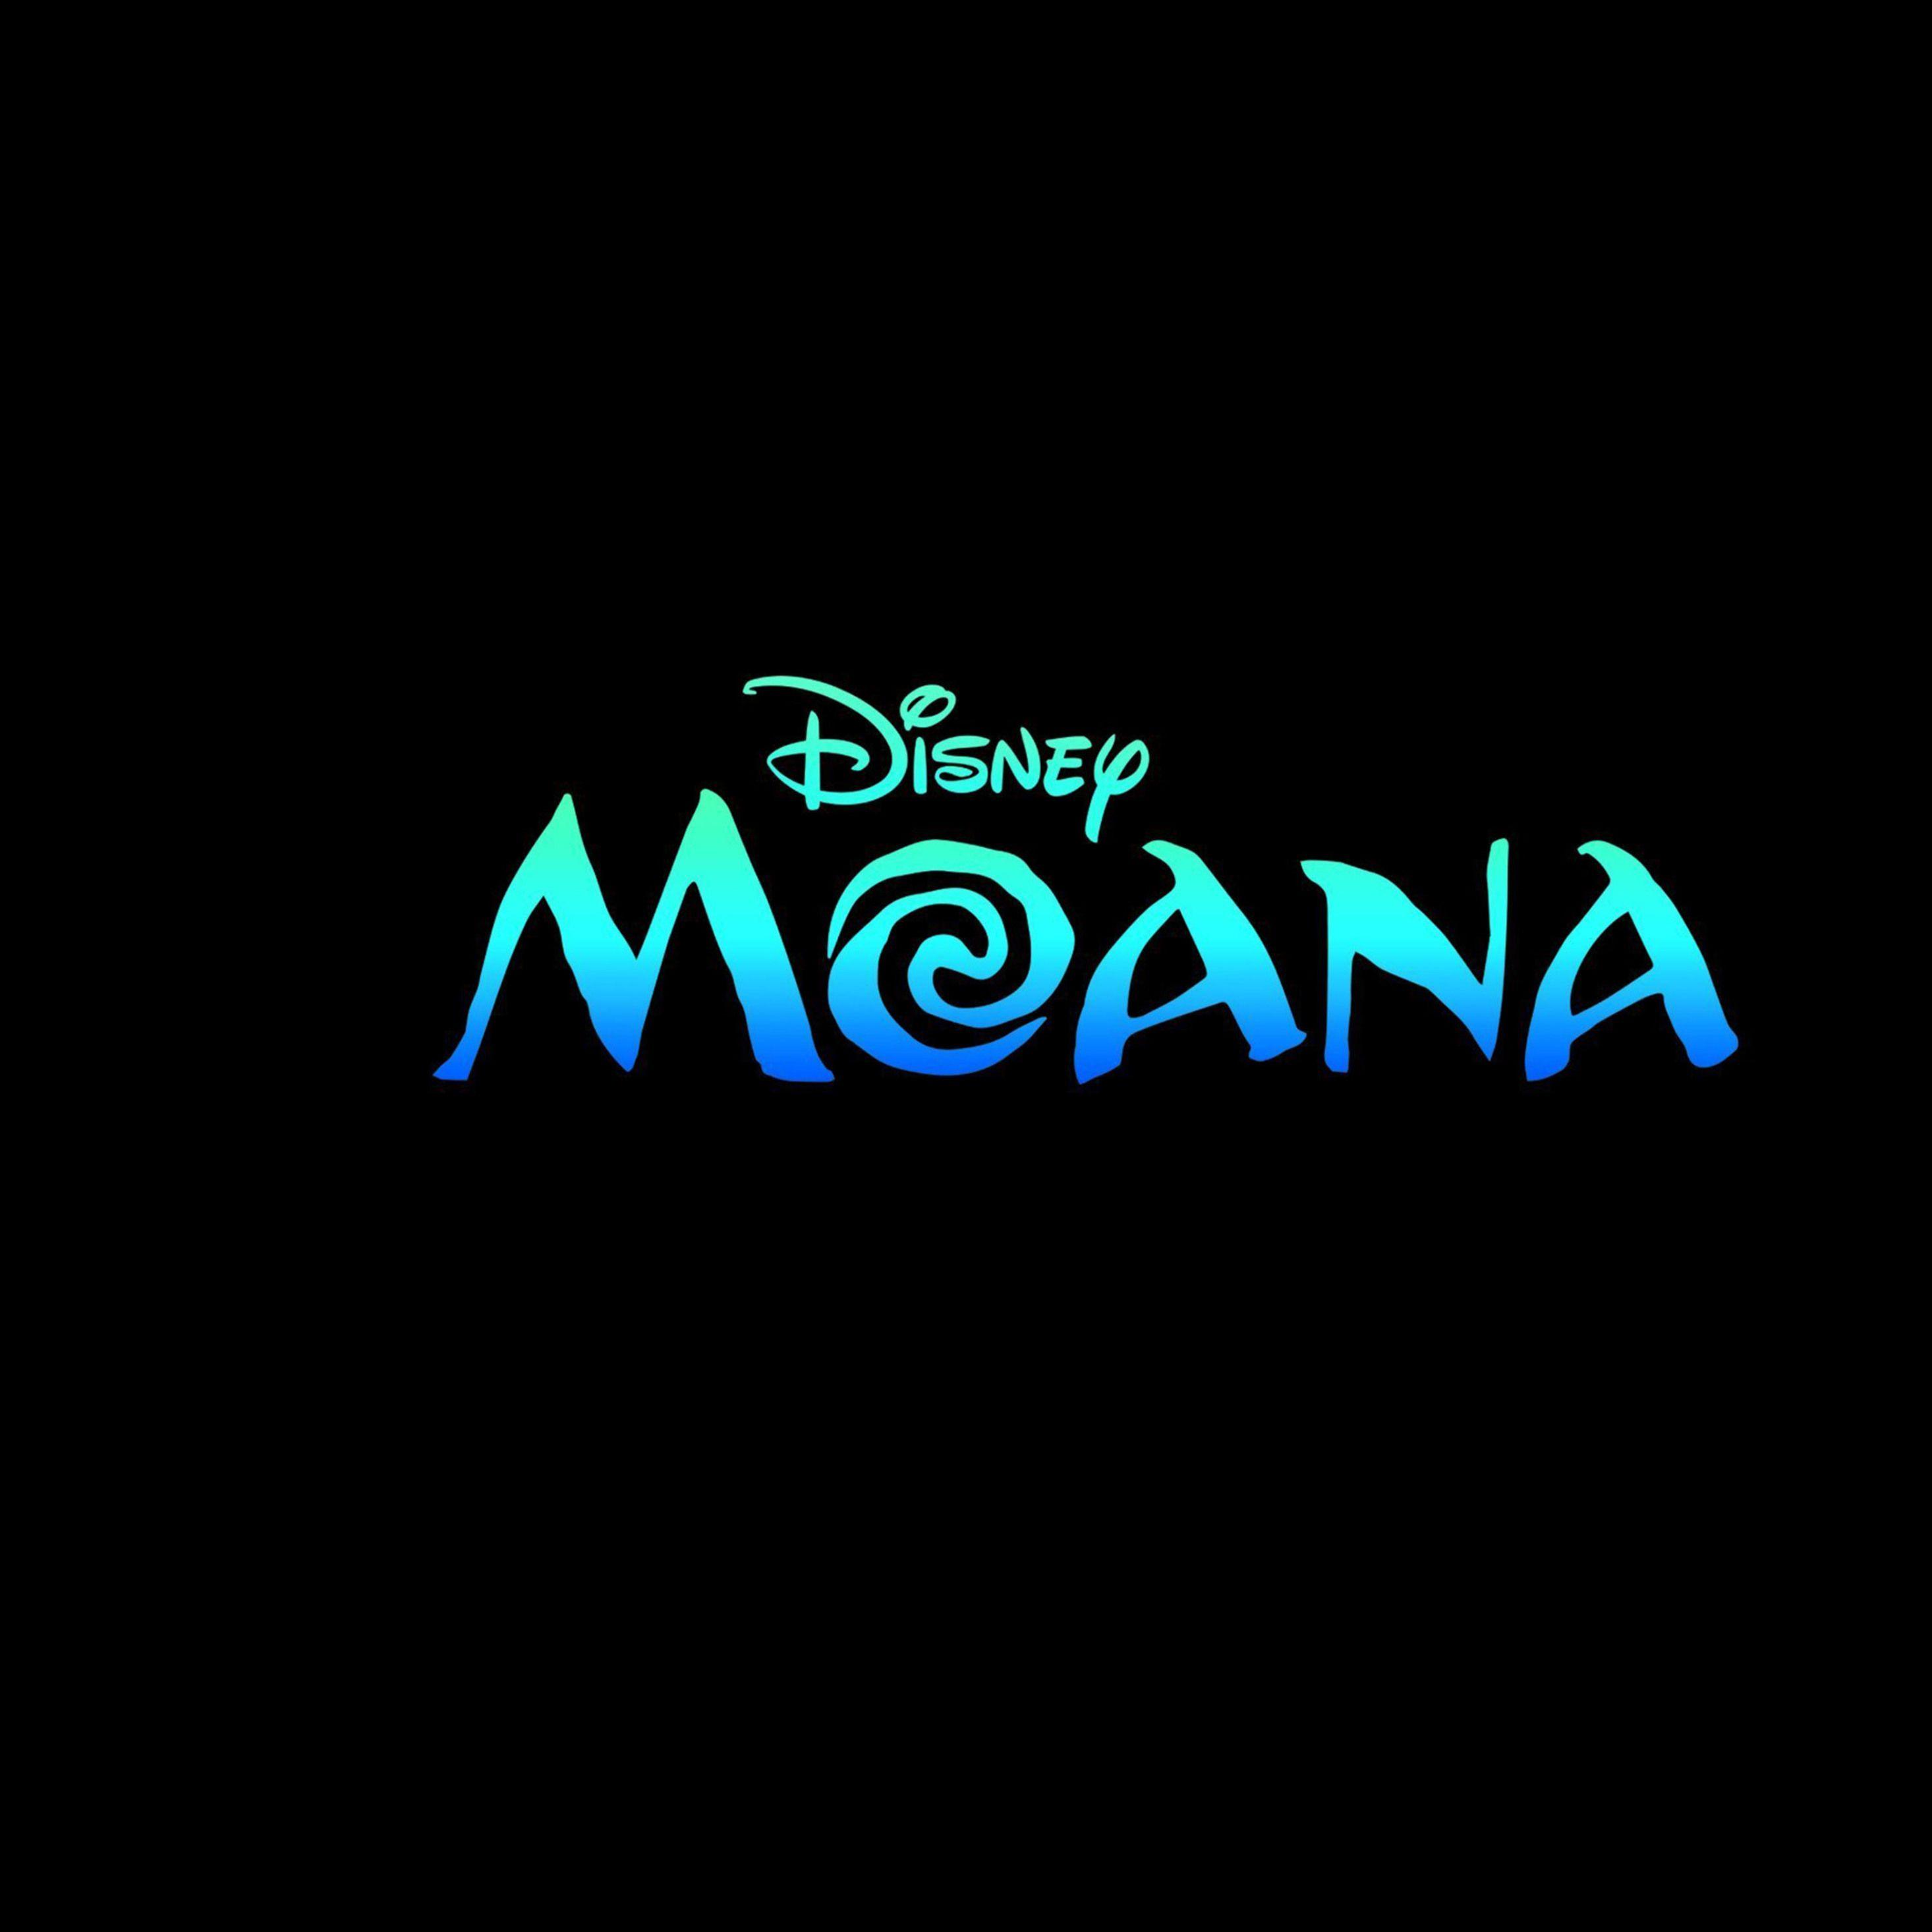 Moana Movie Logo - 2932x2932 Moana Movie Logo Ipad Pro Retina Display HD 4k Wallpapers ...